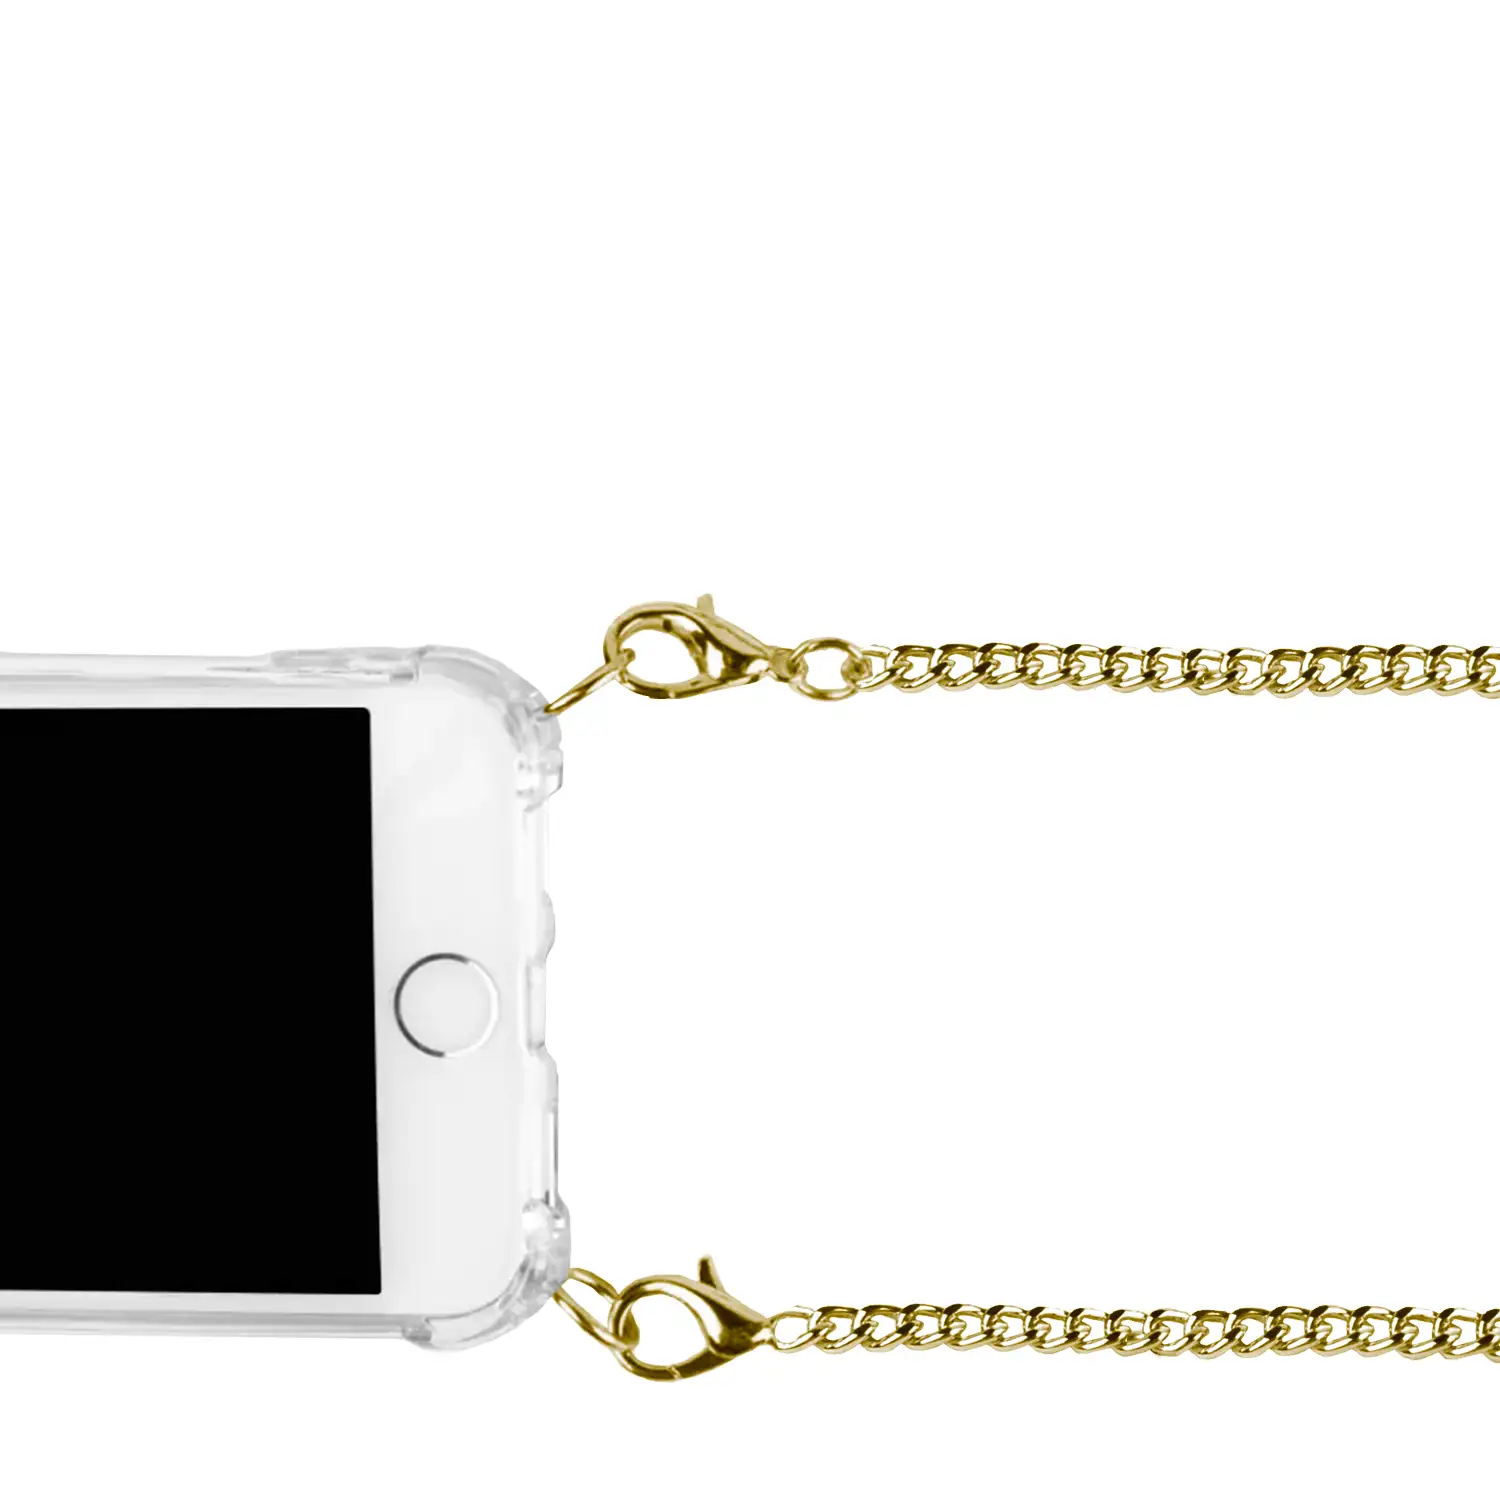 Carcasa transparente iPhone 11 Pro Max con colgante cadena metálica. Accesorio de moda, ajuste perfecto y máxima protección